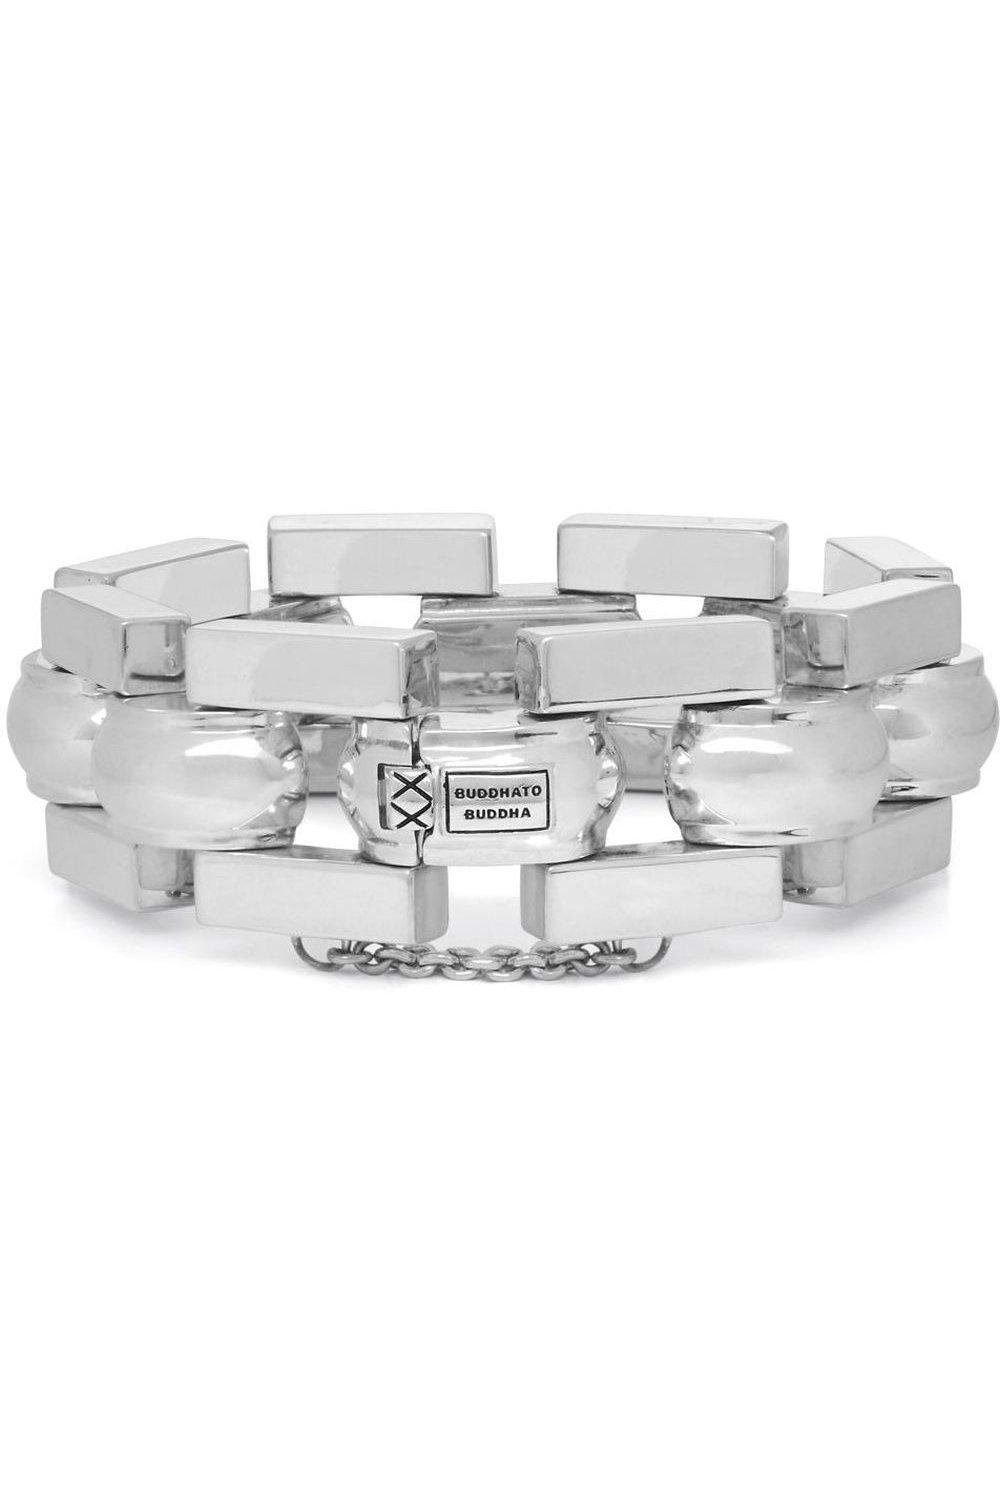 batul sterling silver fashion bracelet - 001j010400106